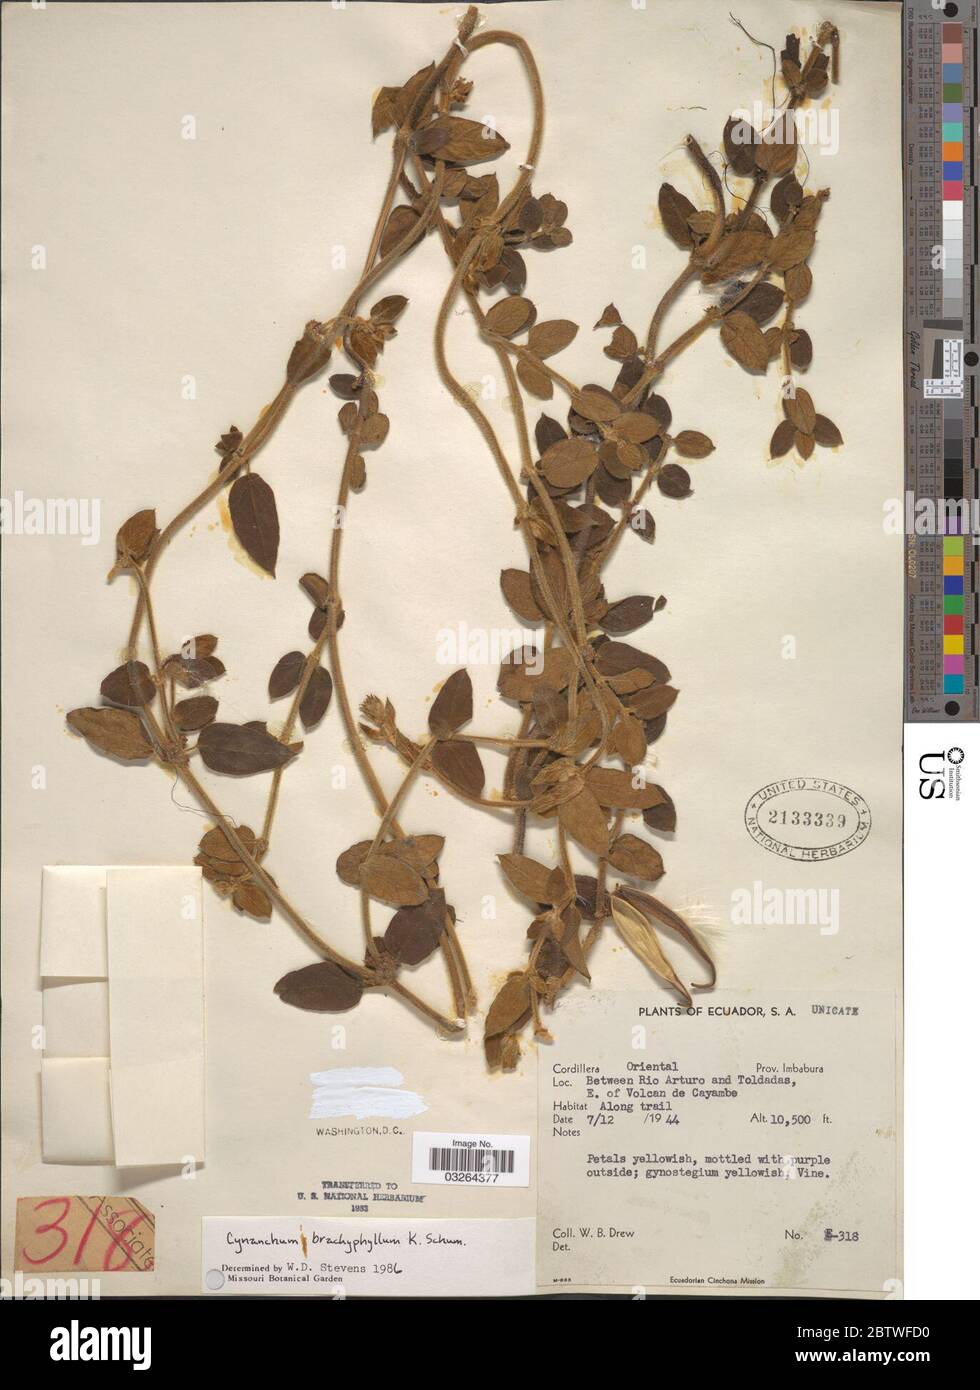 Cynanchum brachyphyllum K Schum. Stock Photo